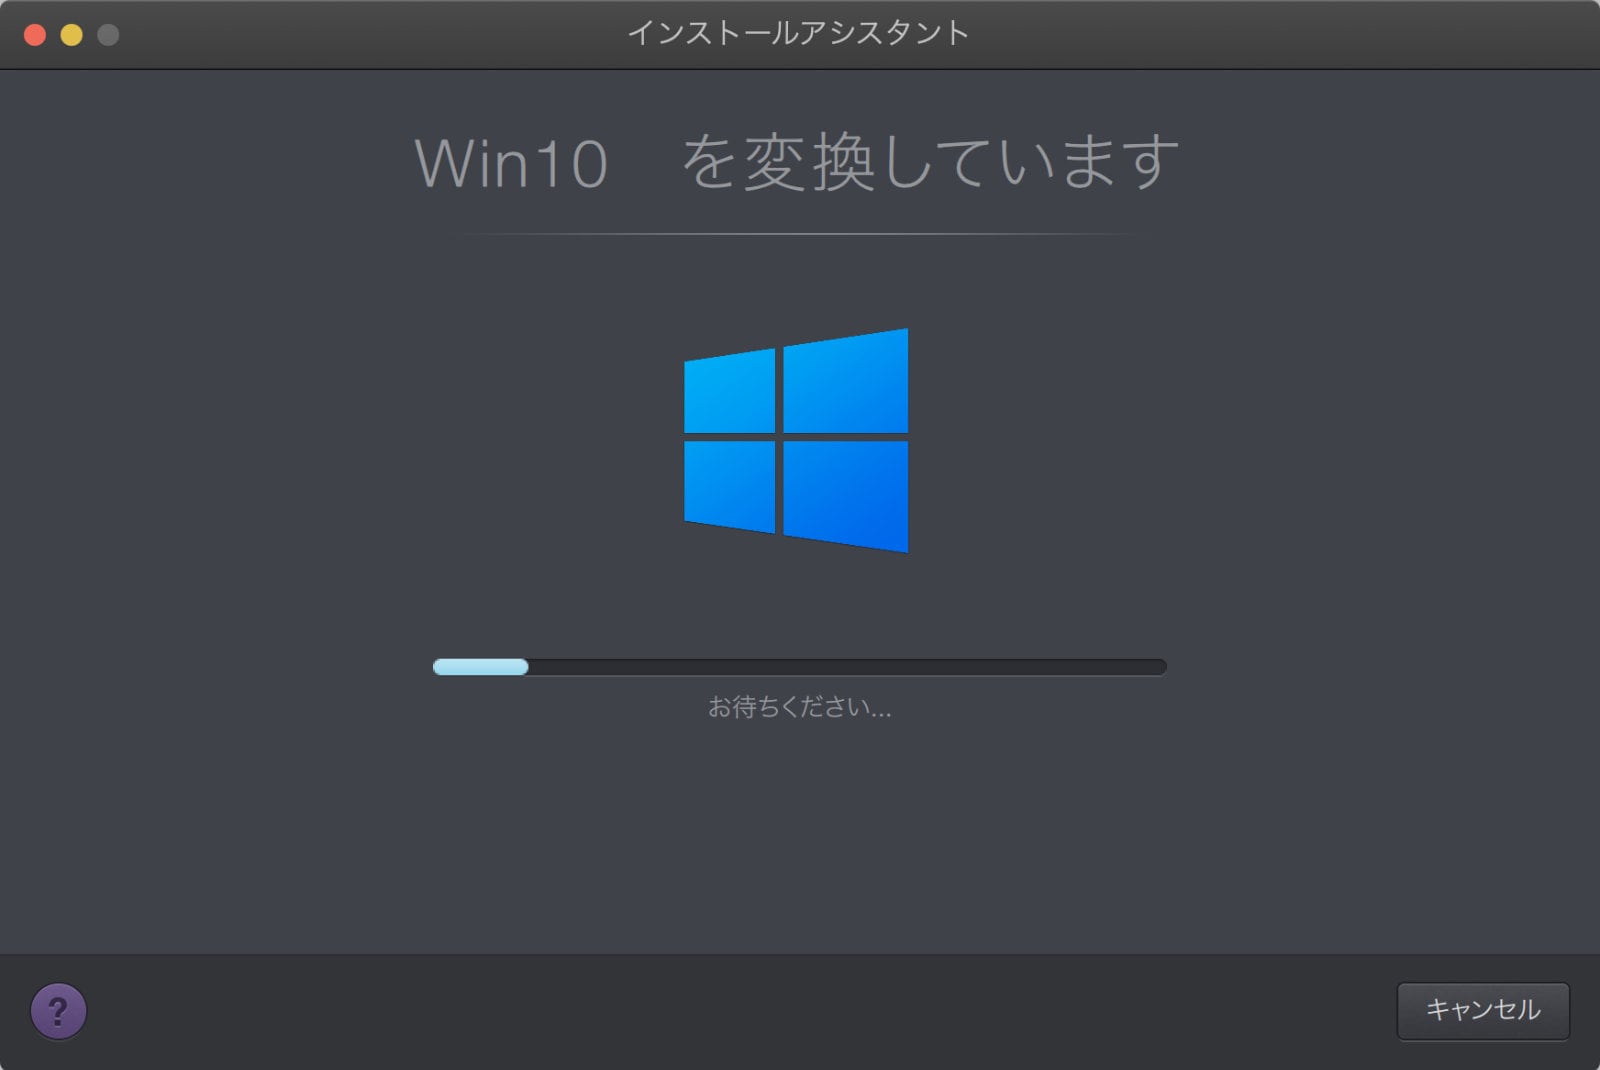 Parallels Desktopのインストールアシスタント画面のキャプチャ。「Win10を変換しています」とプログレスバーが表示されている